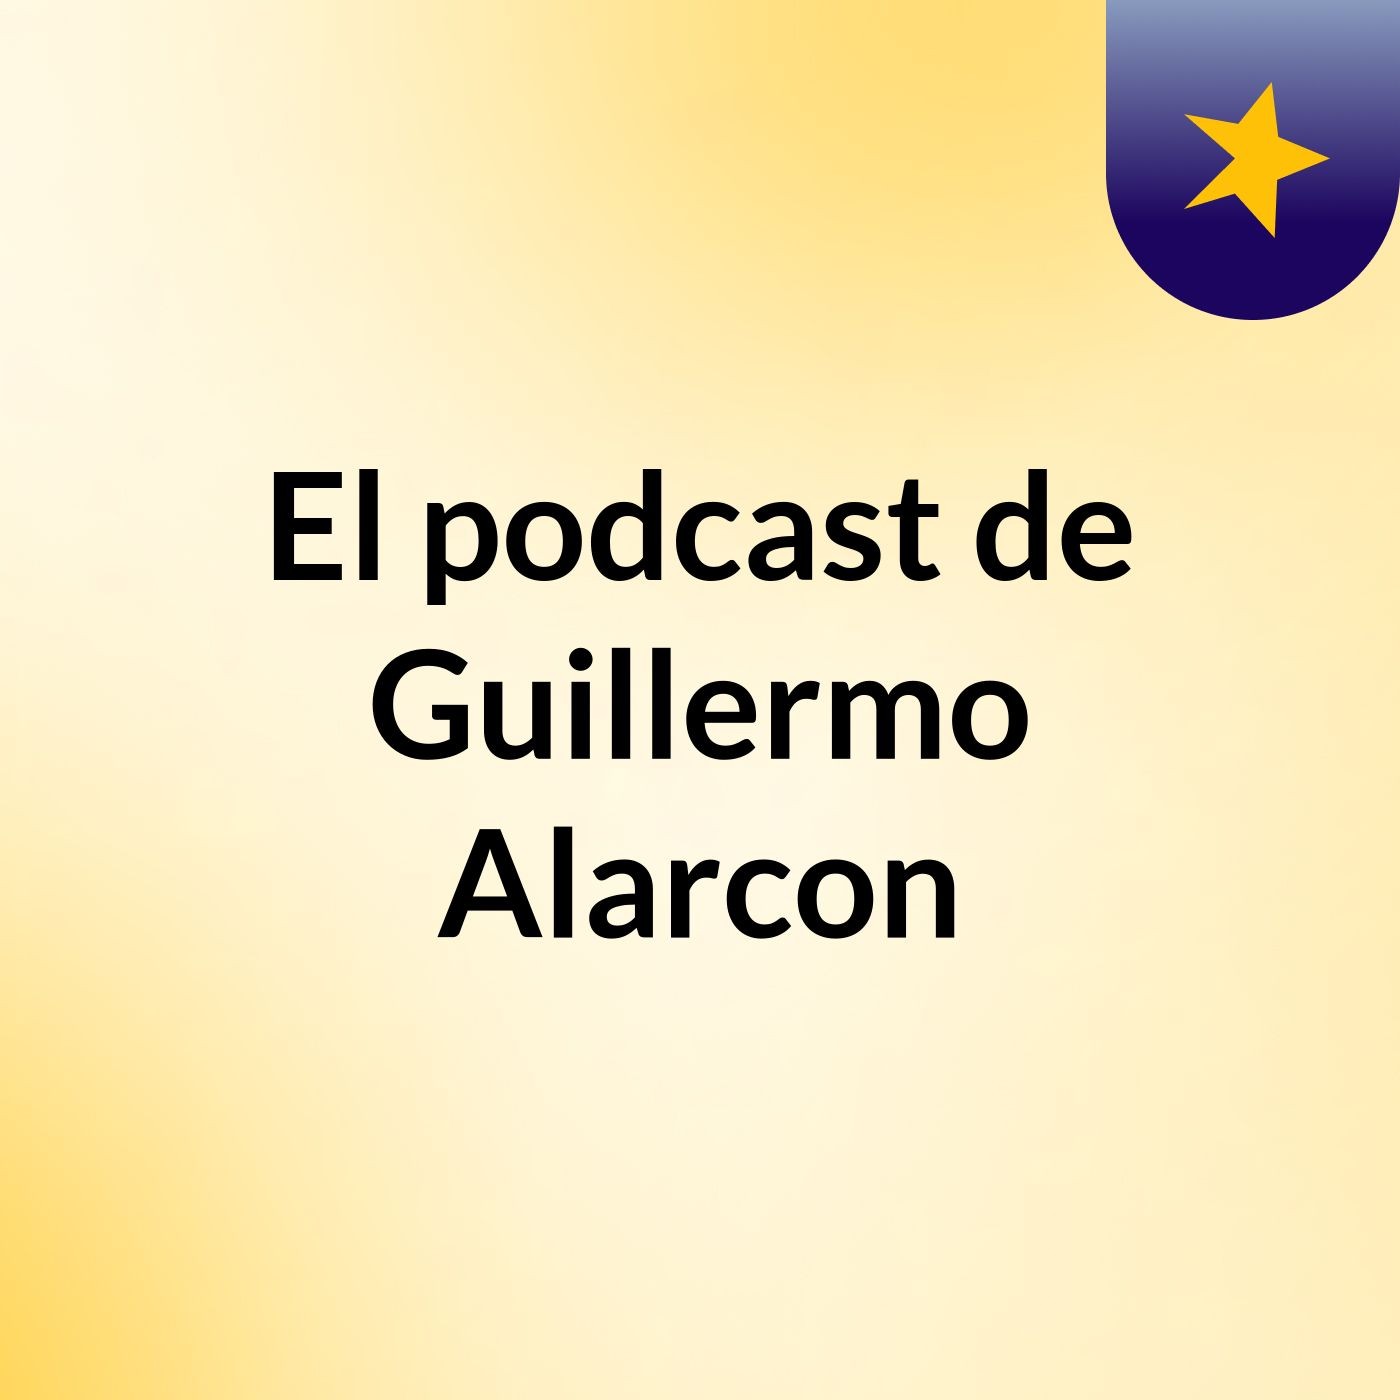 El podcast de Guillermo Alarcon